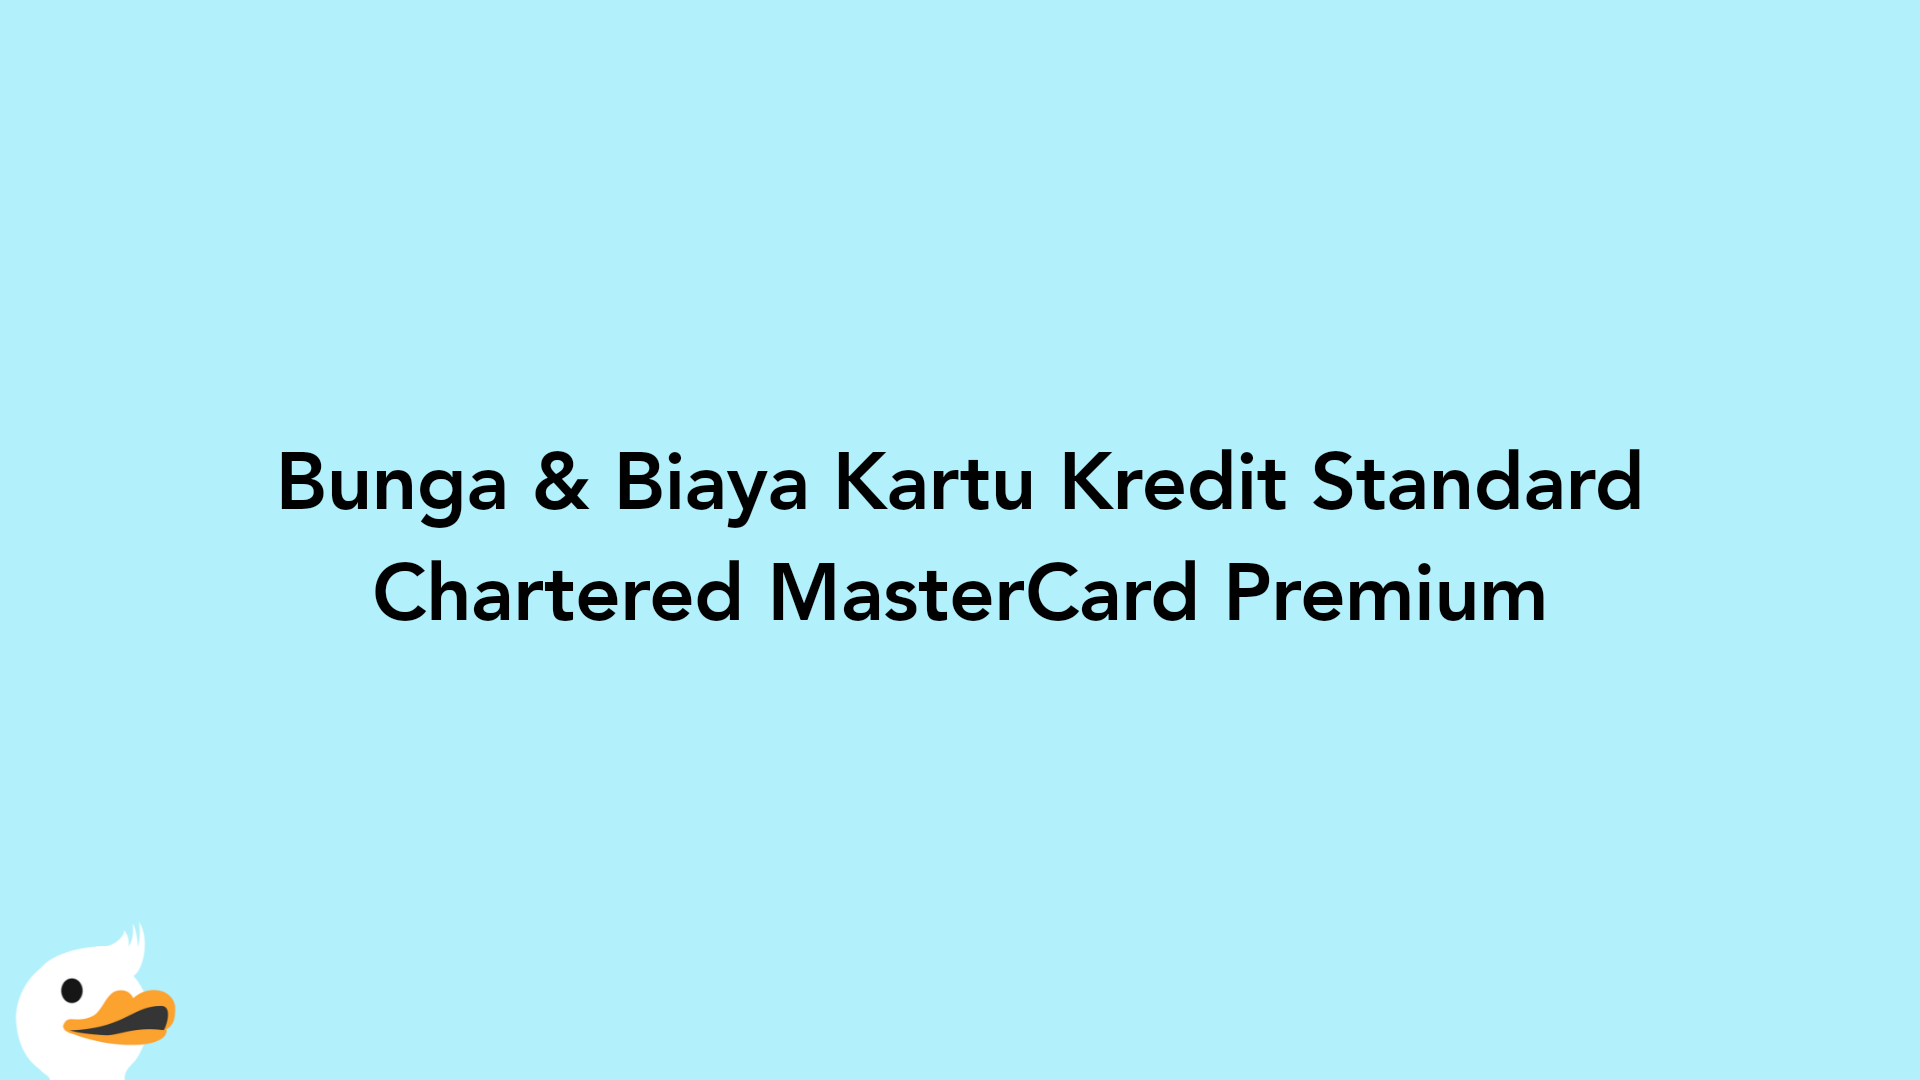 Bunga & Biaya Kartu Kredit Standard Chartered MasterCard Premium